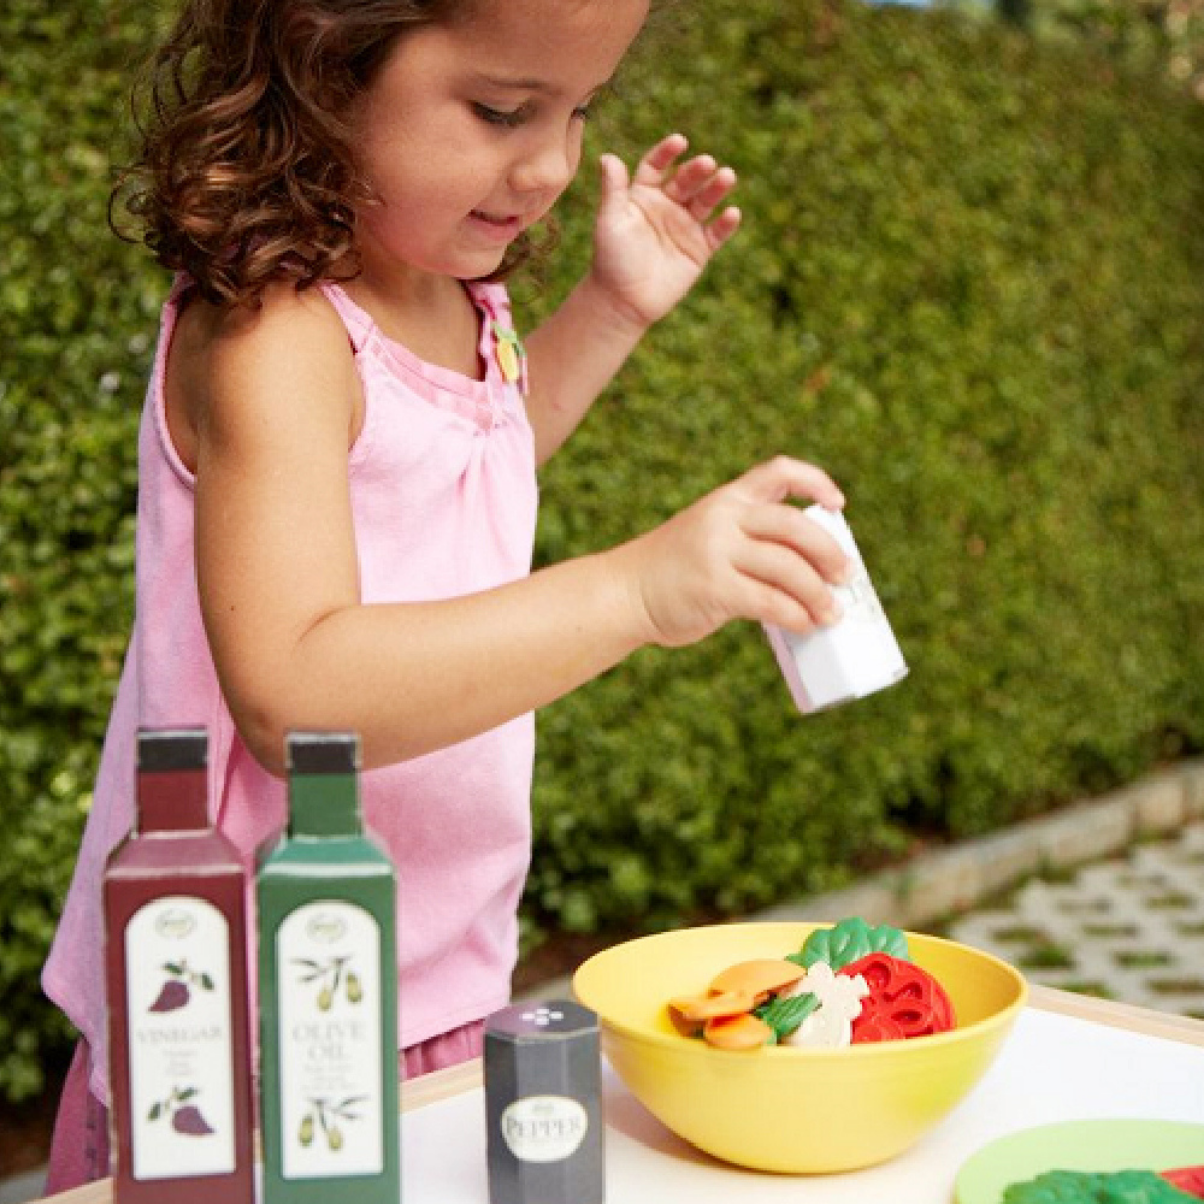 Bộ Đồ Chơi Làm Salad Green Toys Cho Bé Từ 2 Tuổi